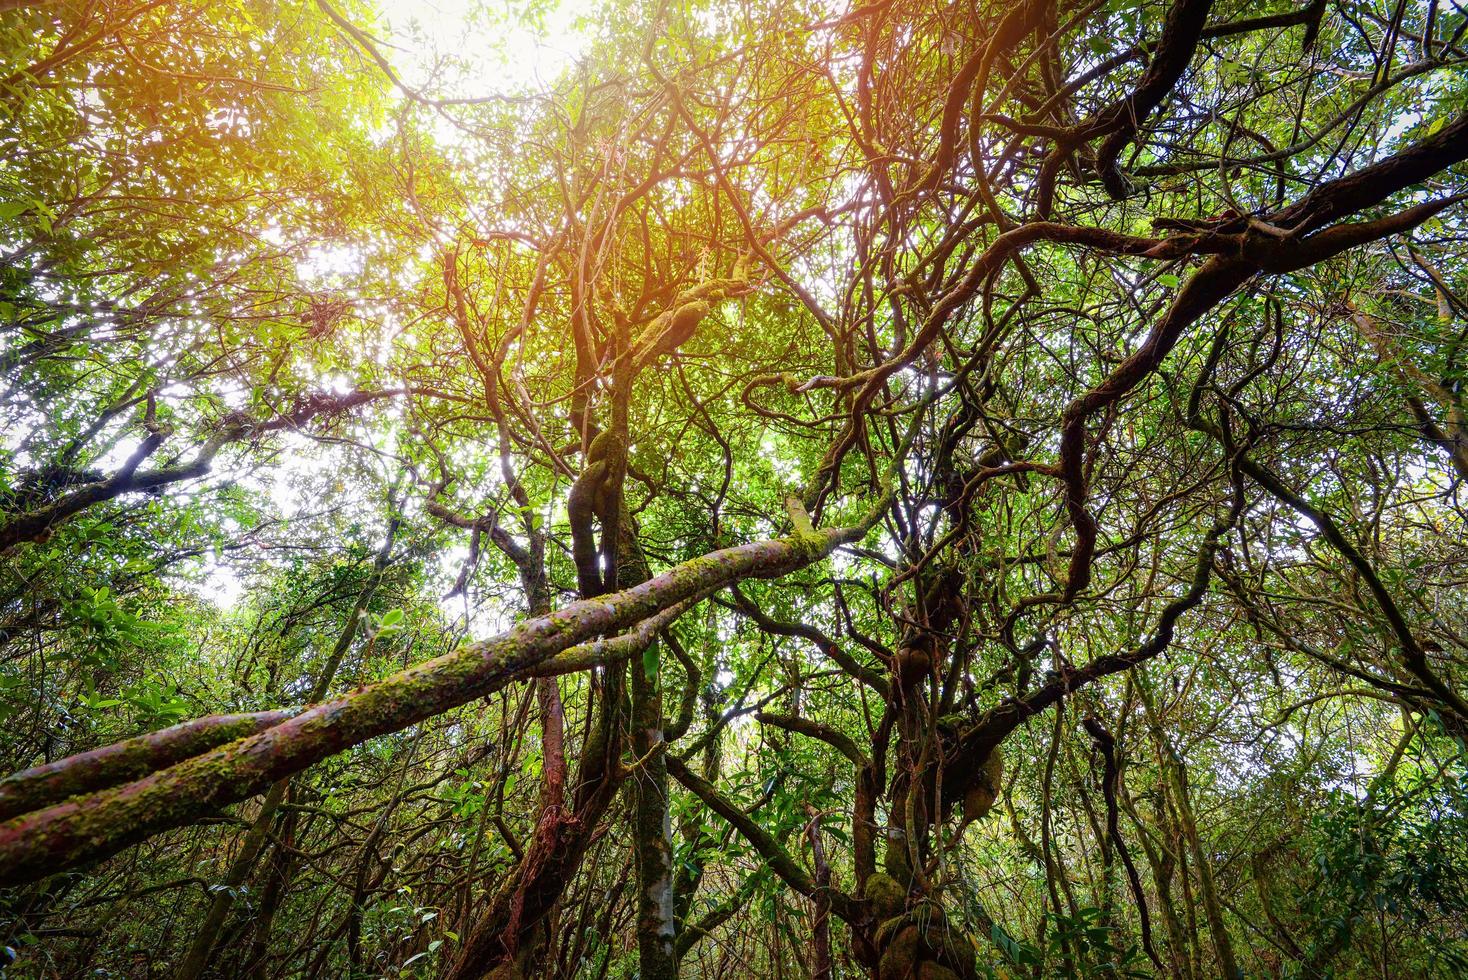 alter Wald alt mit grüner Pflanze und Baum Efeu-Rebe-Wald-Dschungel foto